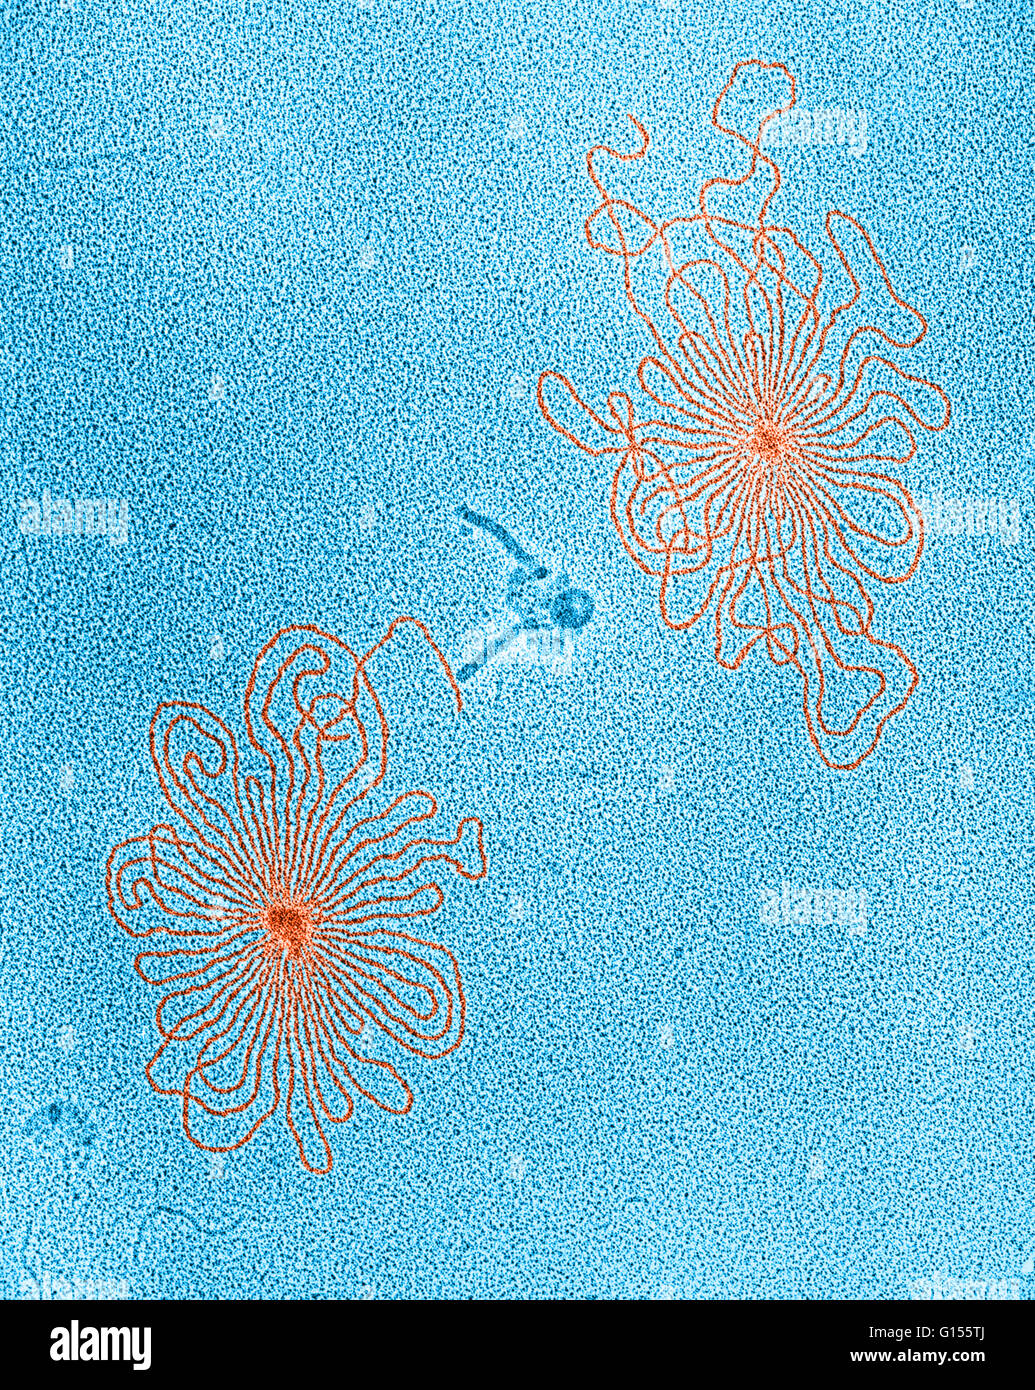 Colore esaltato micrografia di DNA di due lamda di tipo selvatico batteriofagi. I fantasmi di fagi sono visibili anche al centro del campo. Mag., 100,000x Foto Stock